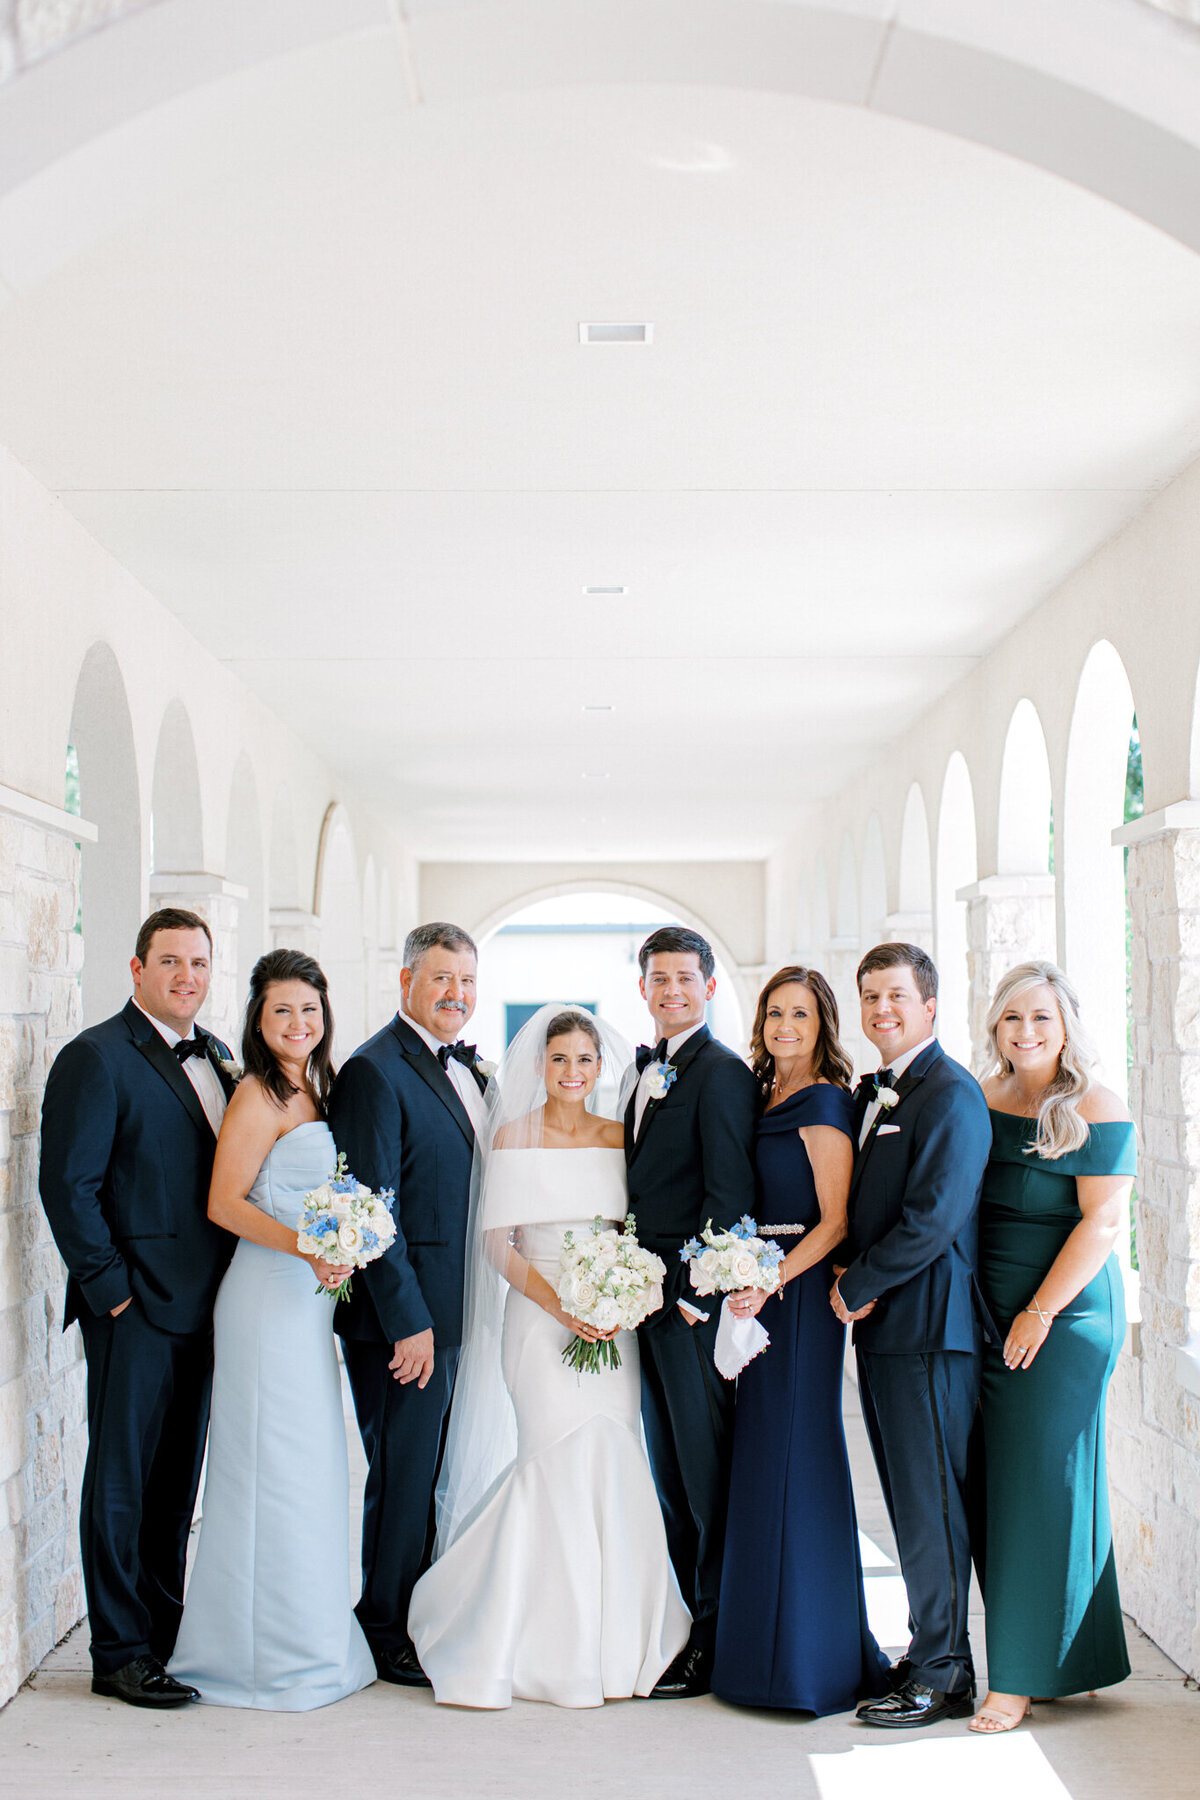 Annie & Logan's Wedding | Dallas Wedding Photographer | Sami Kathryn Photography-120